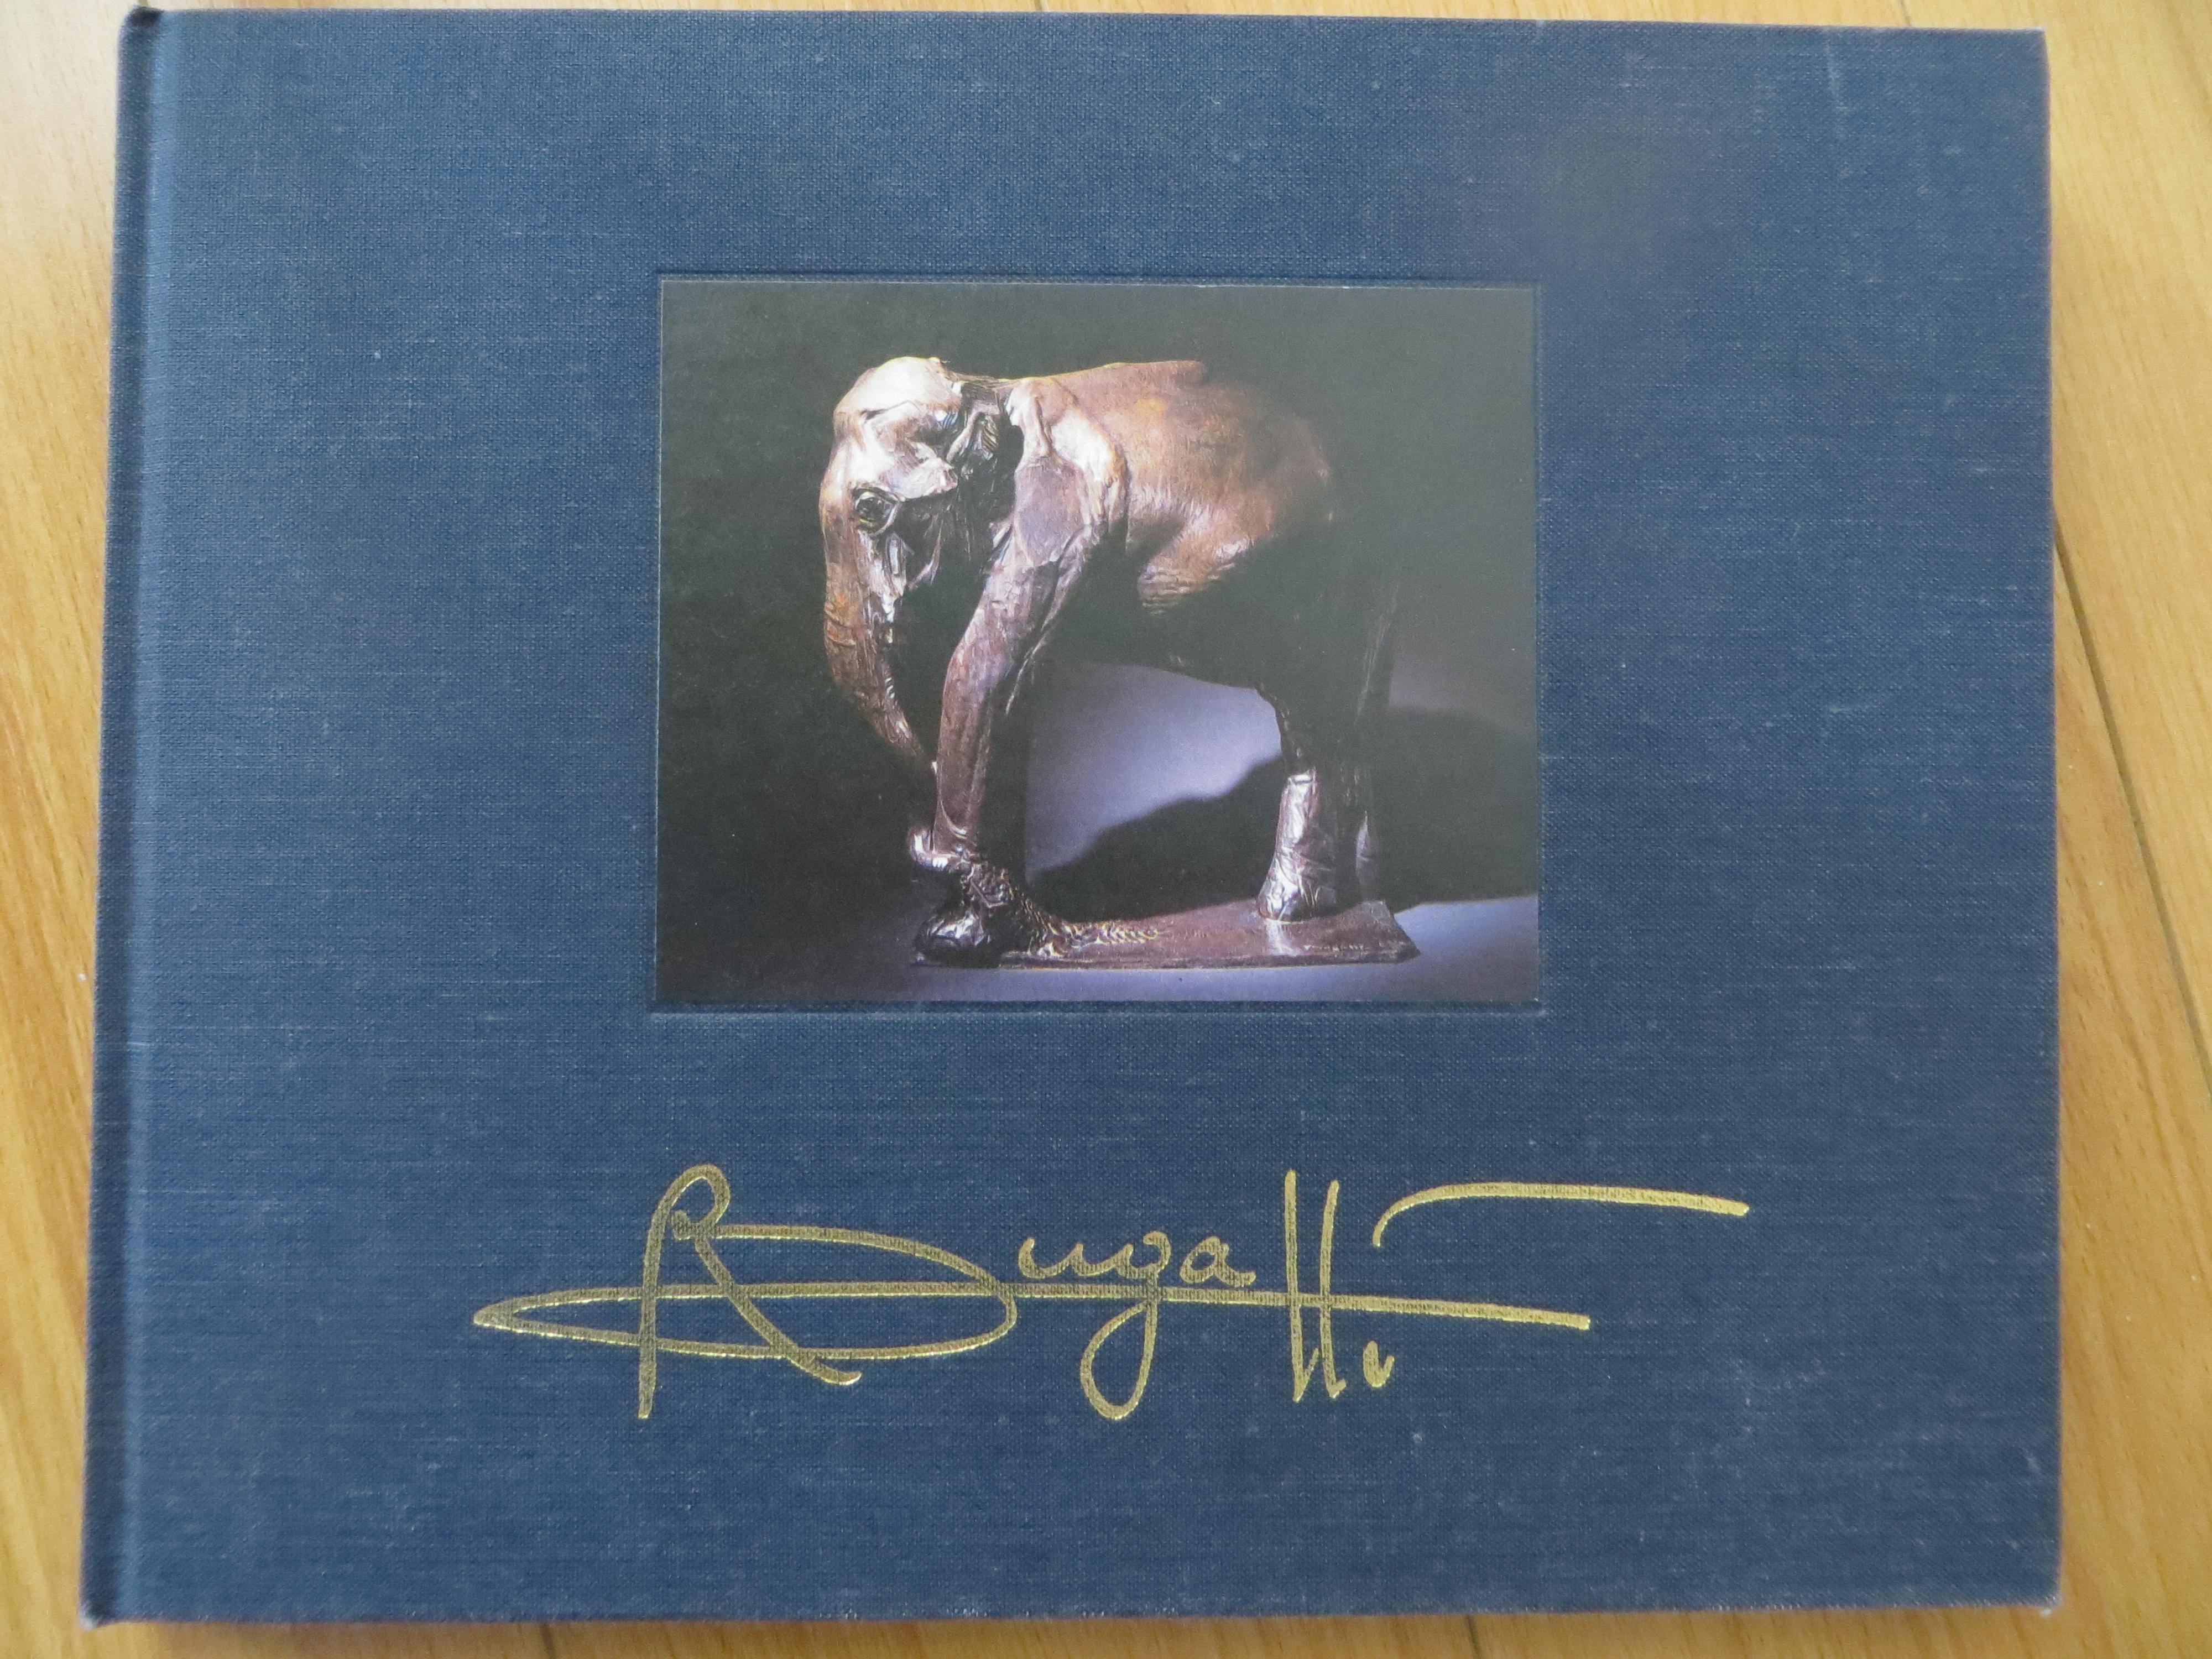 Les Bugatti d'Alain Delon, Rembrand Bugatti Four Catalogs Original Edtion 5